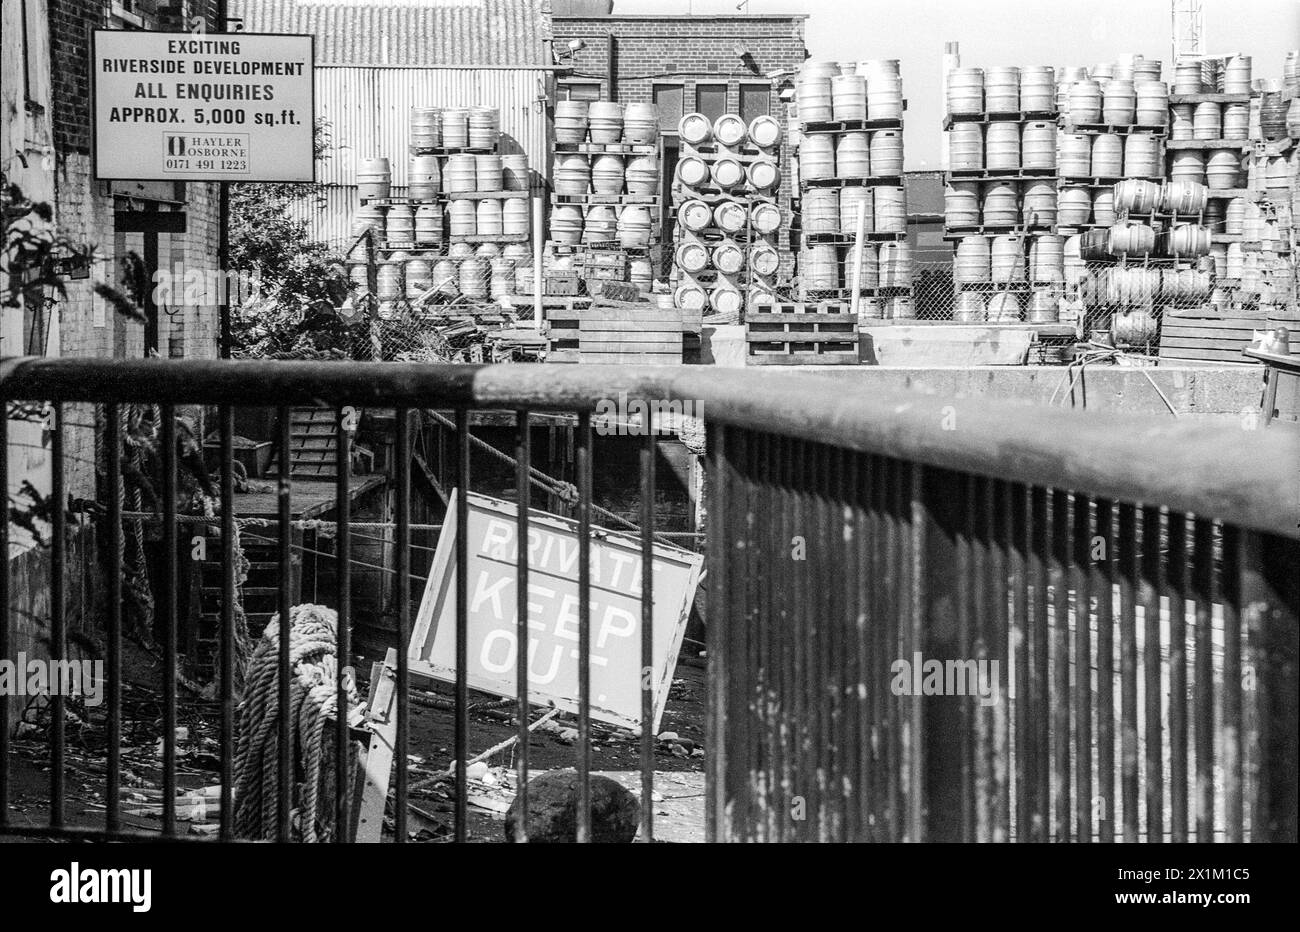 Une image d'archives des années 1990 sur la rive sud de la Tamise entre Greenwich et Deptford Creek montre un panneau d'agents immobiliers offrant un développement riverain passionnant. Banque D'Images